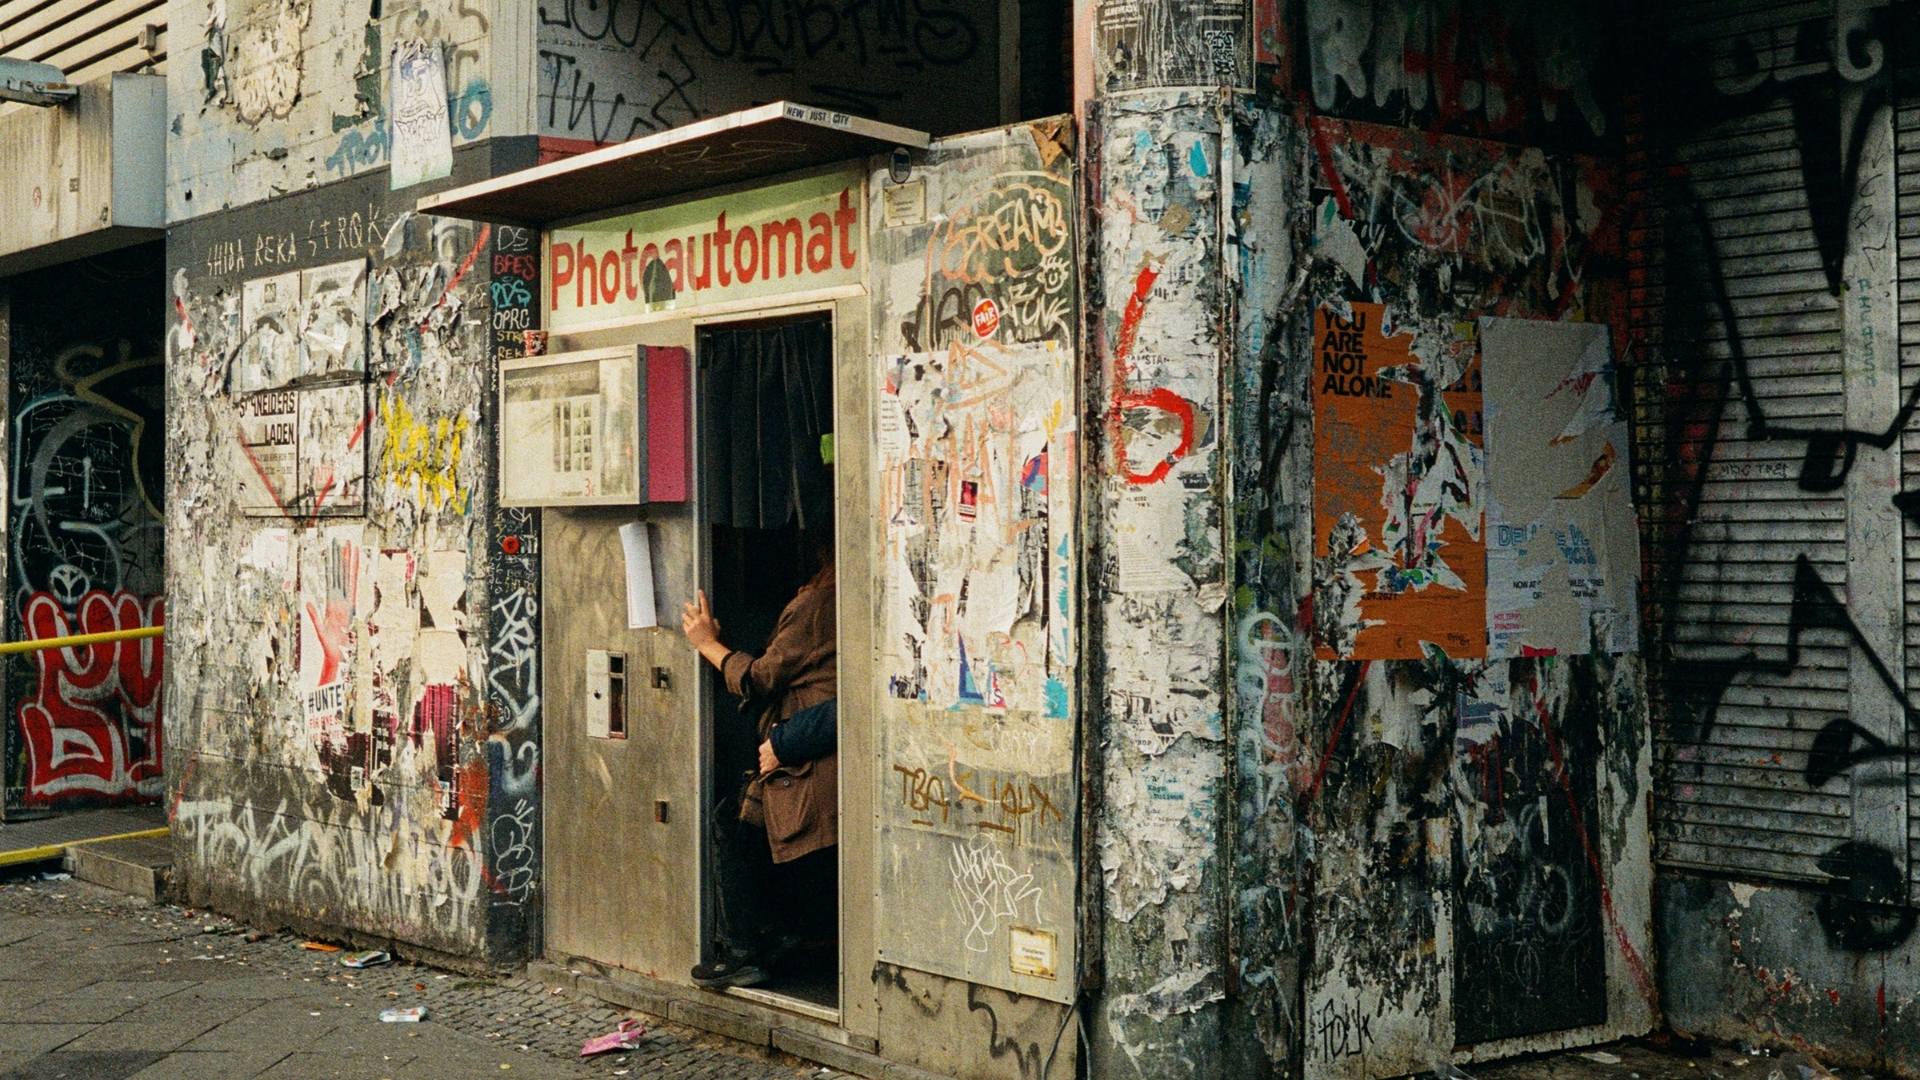 Berlín Photoautomat